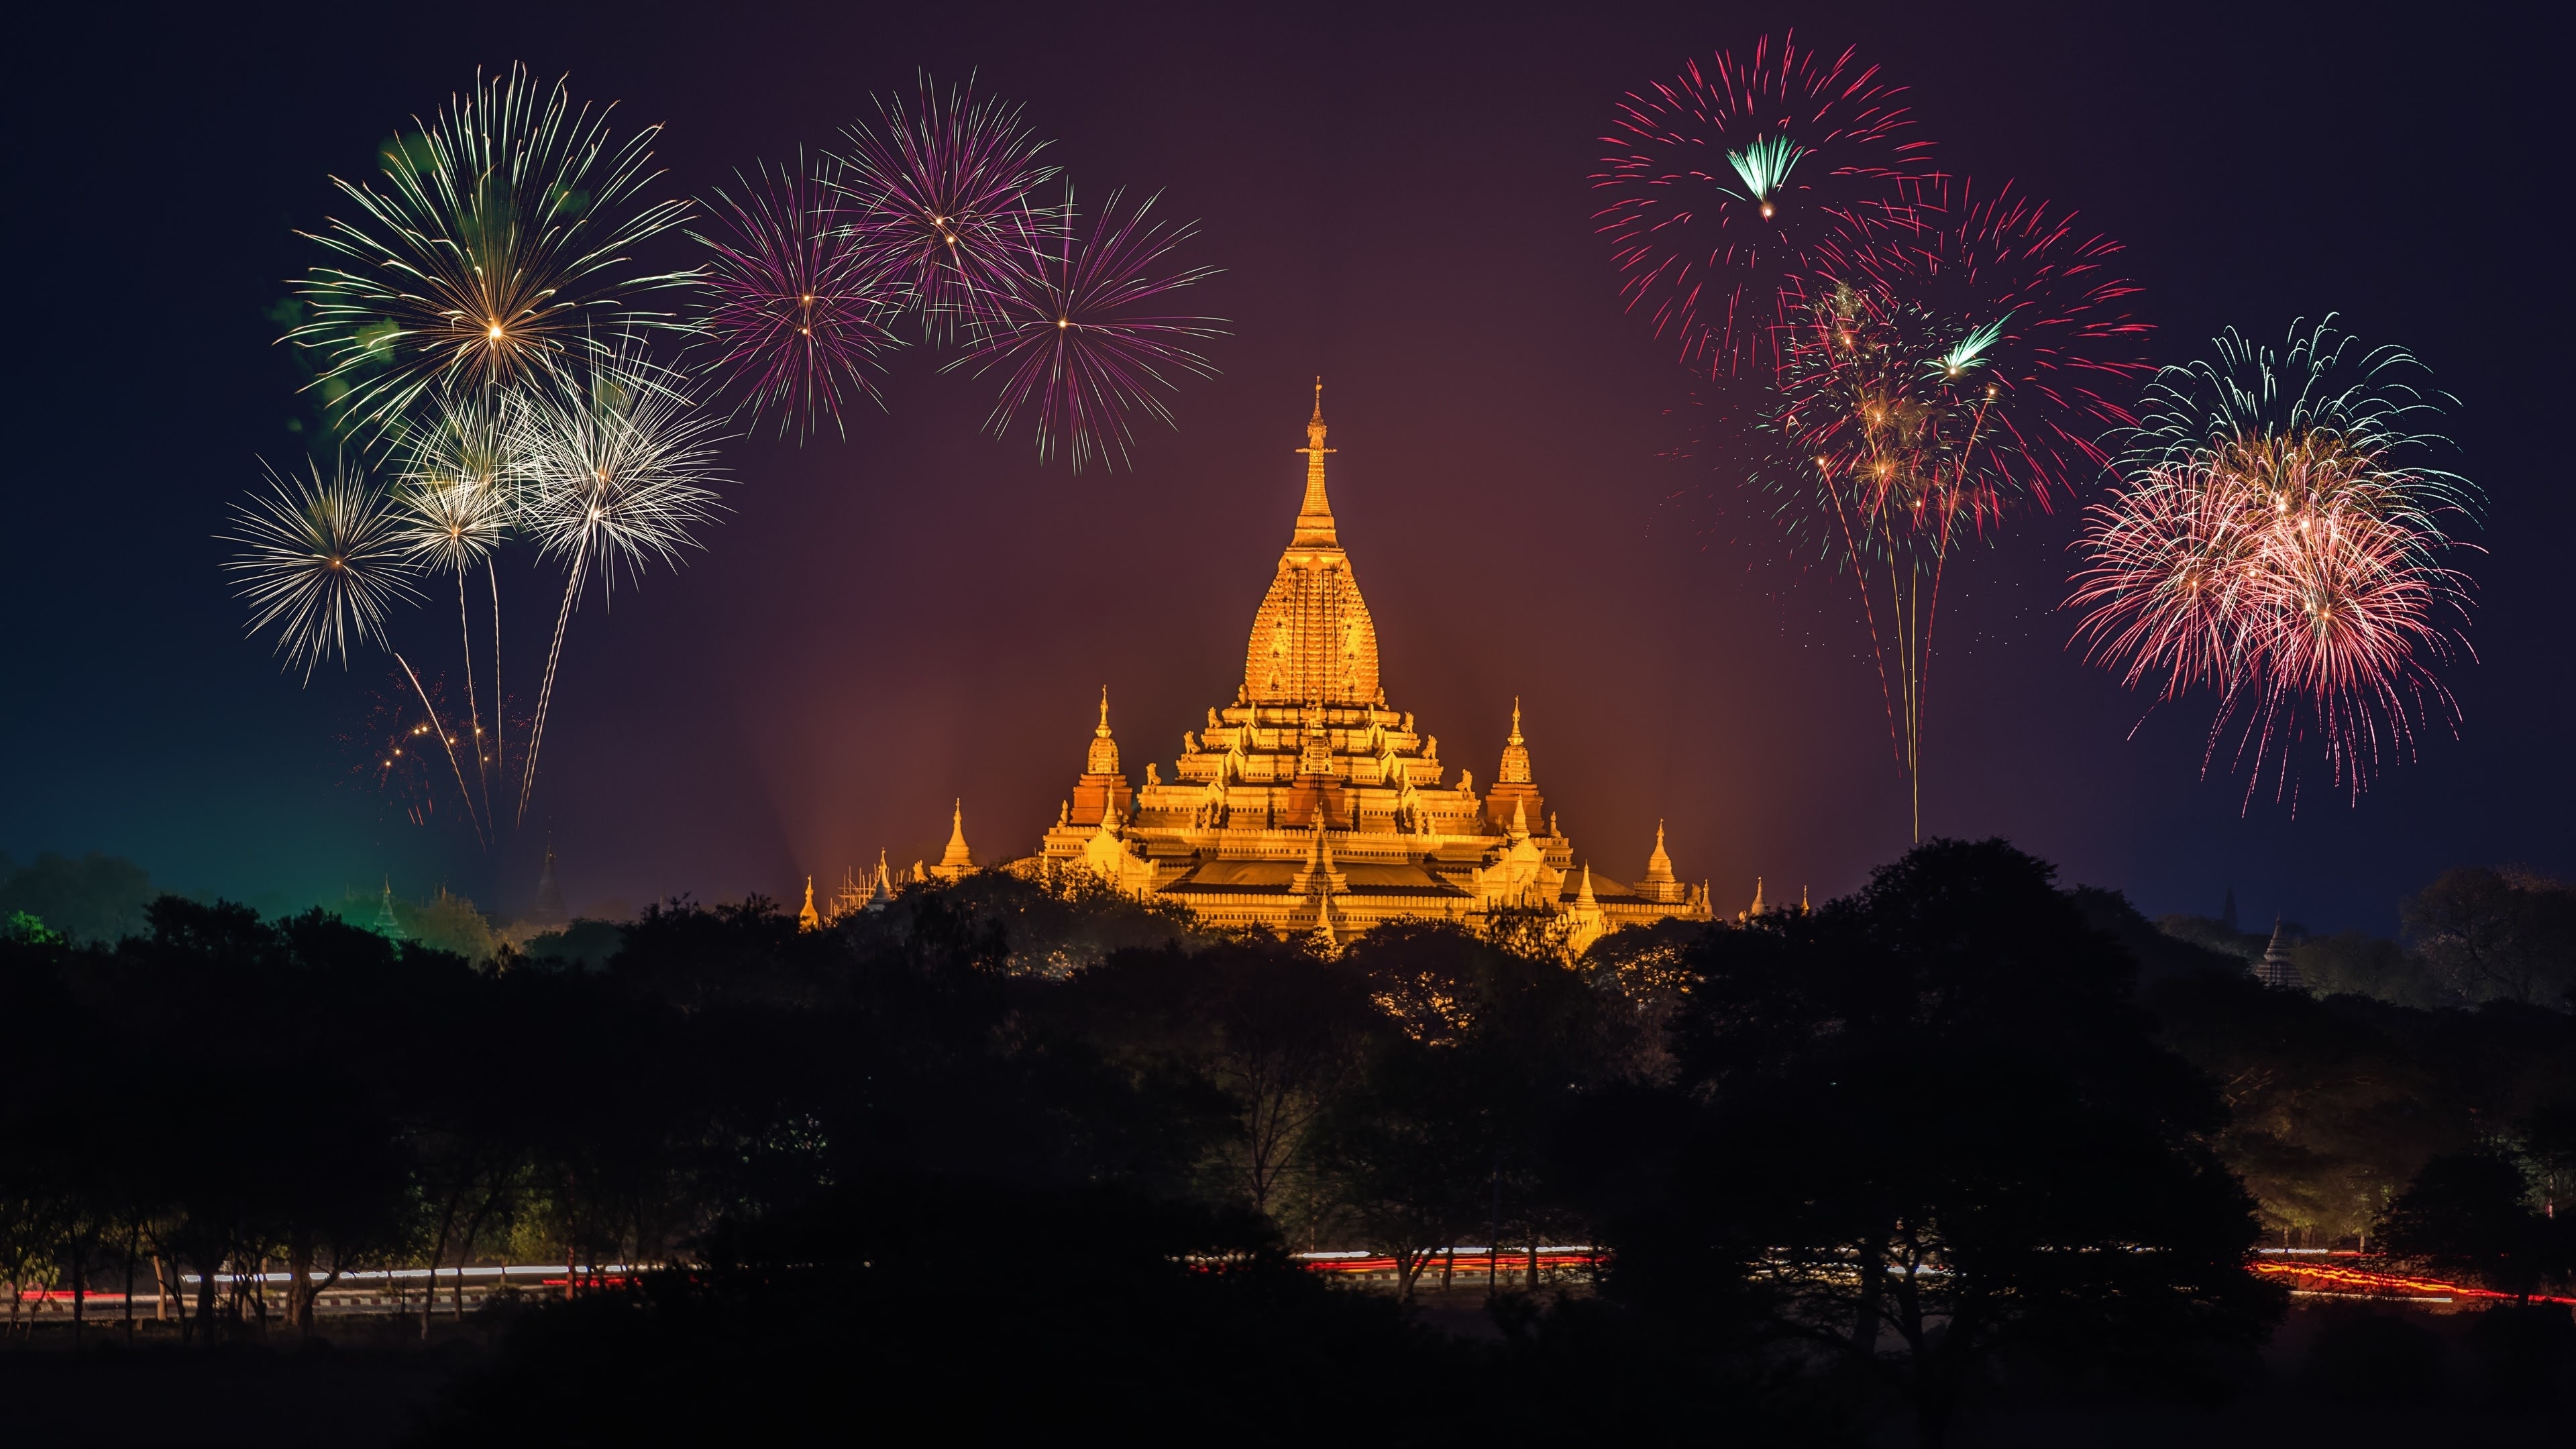 Фото фейерверк, мьянма, обои храм ананда, природа, праздники - бесплатные картинки на Fonwall